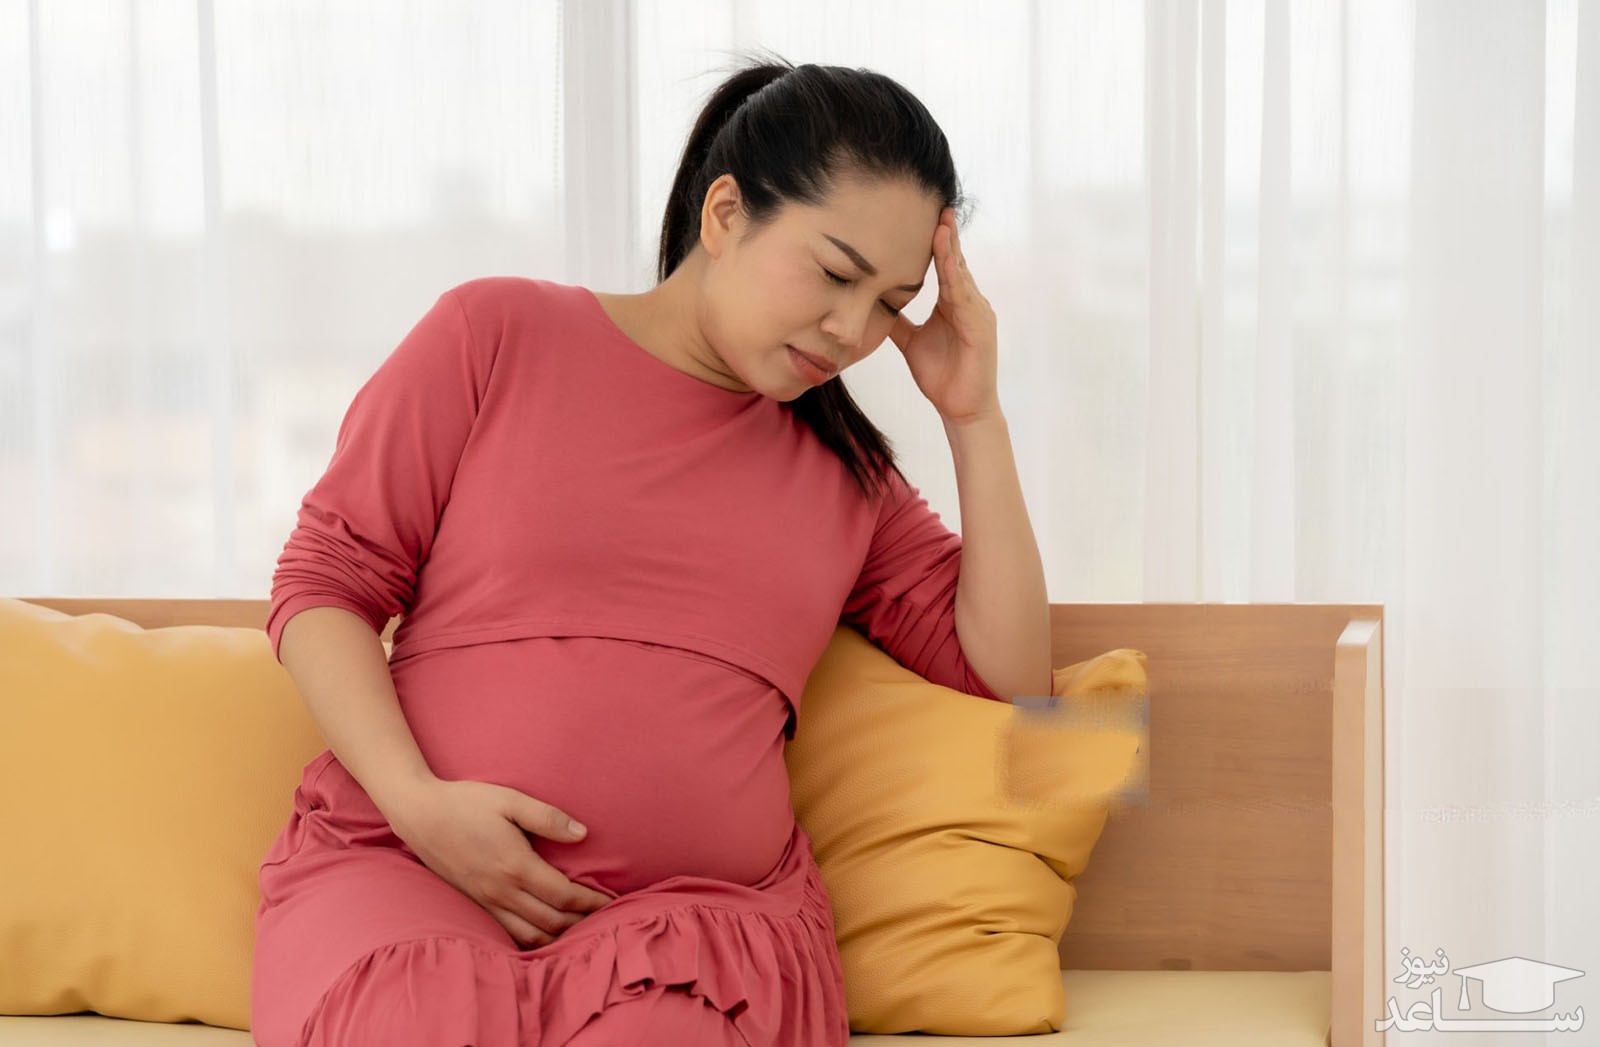 دلایل وسواس های فکری و عملی در بارداری